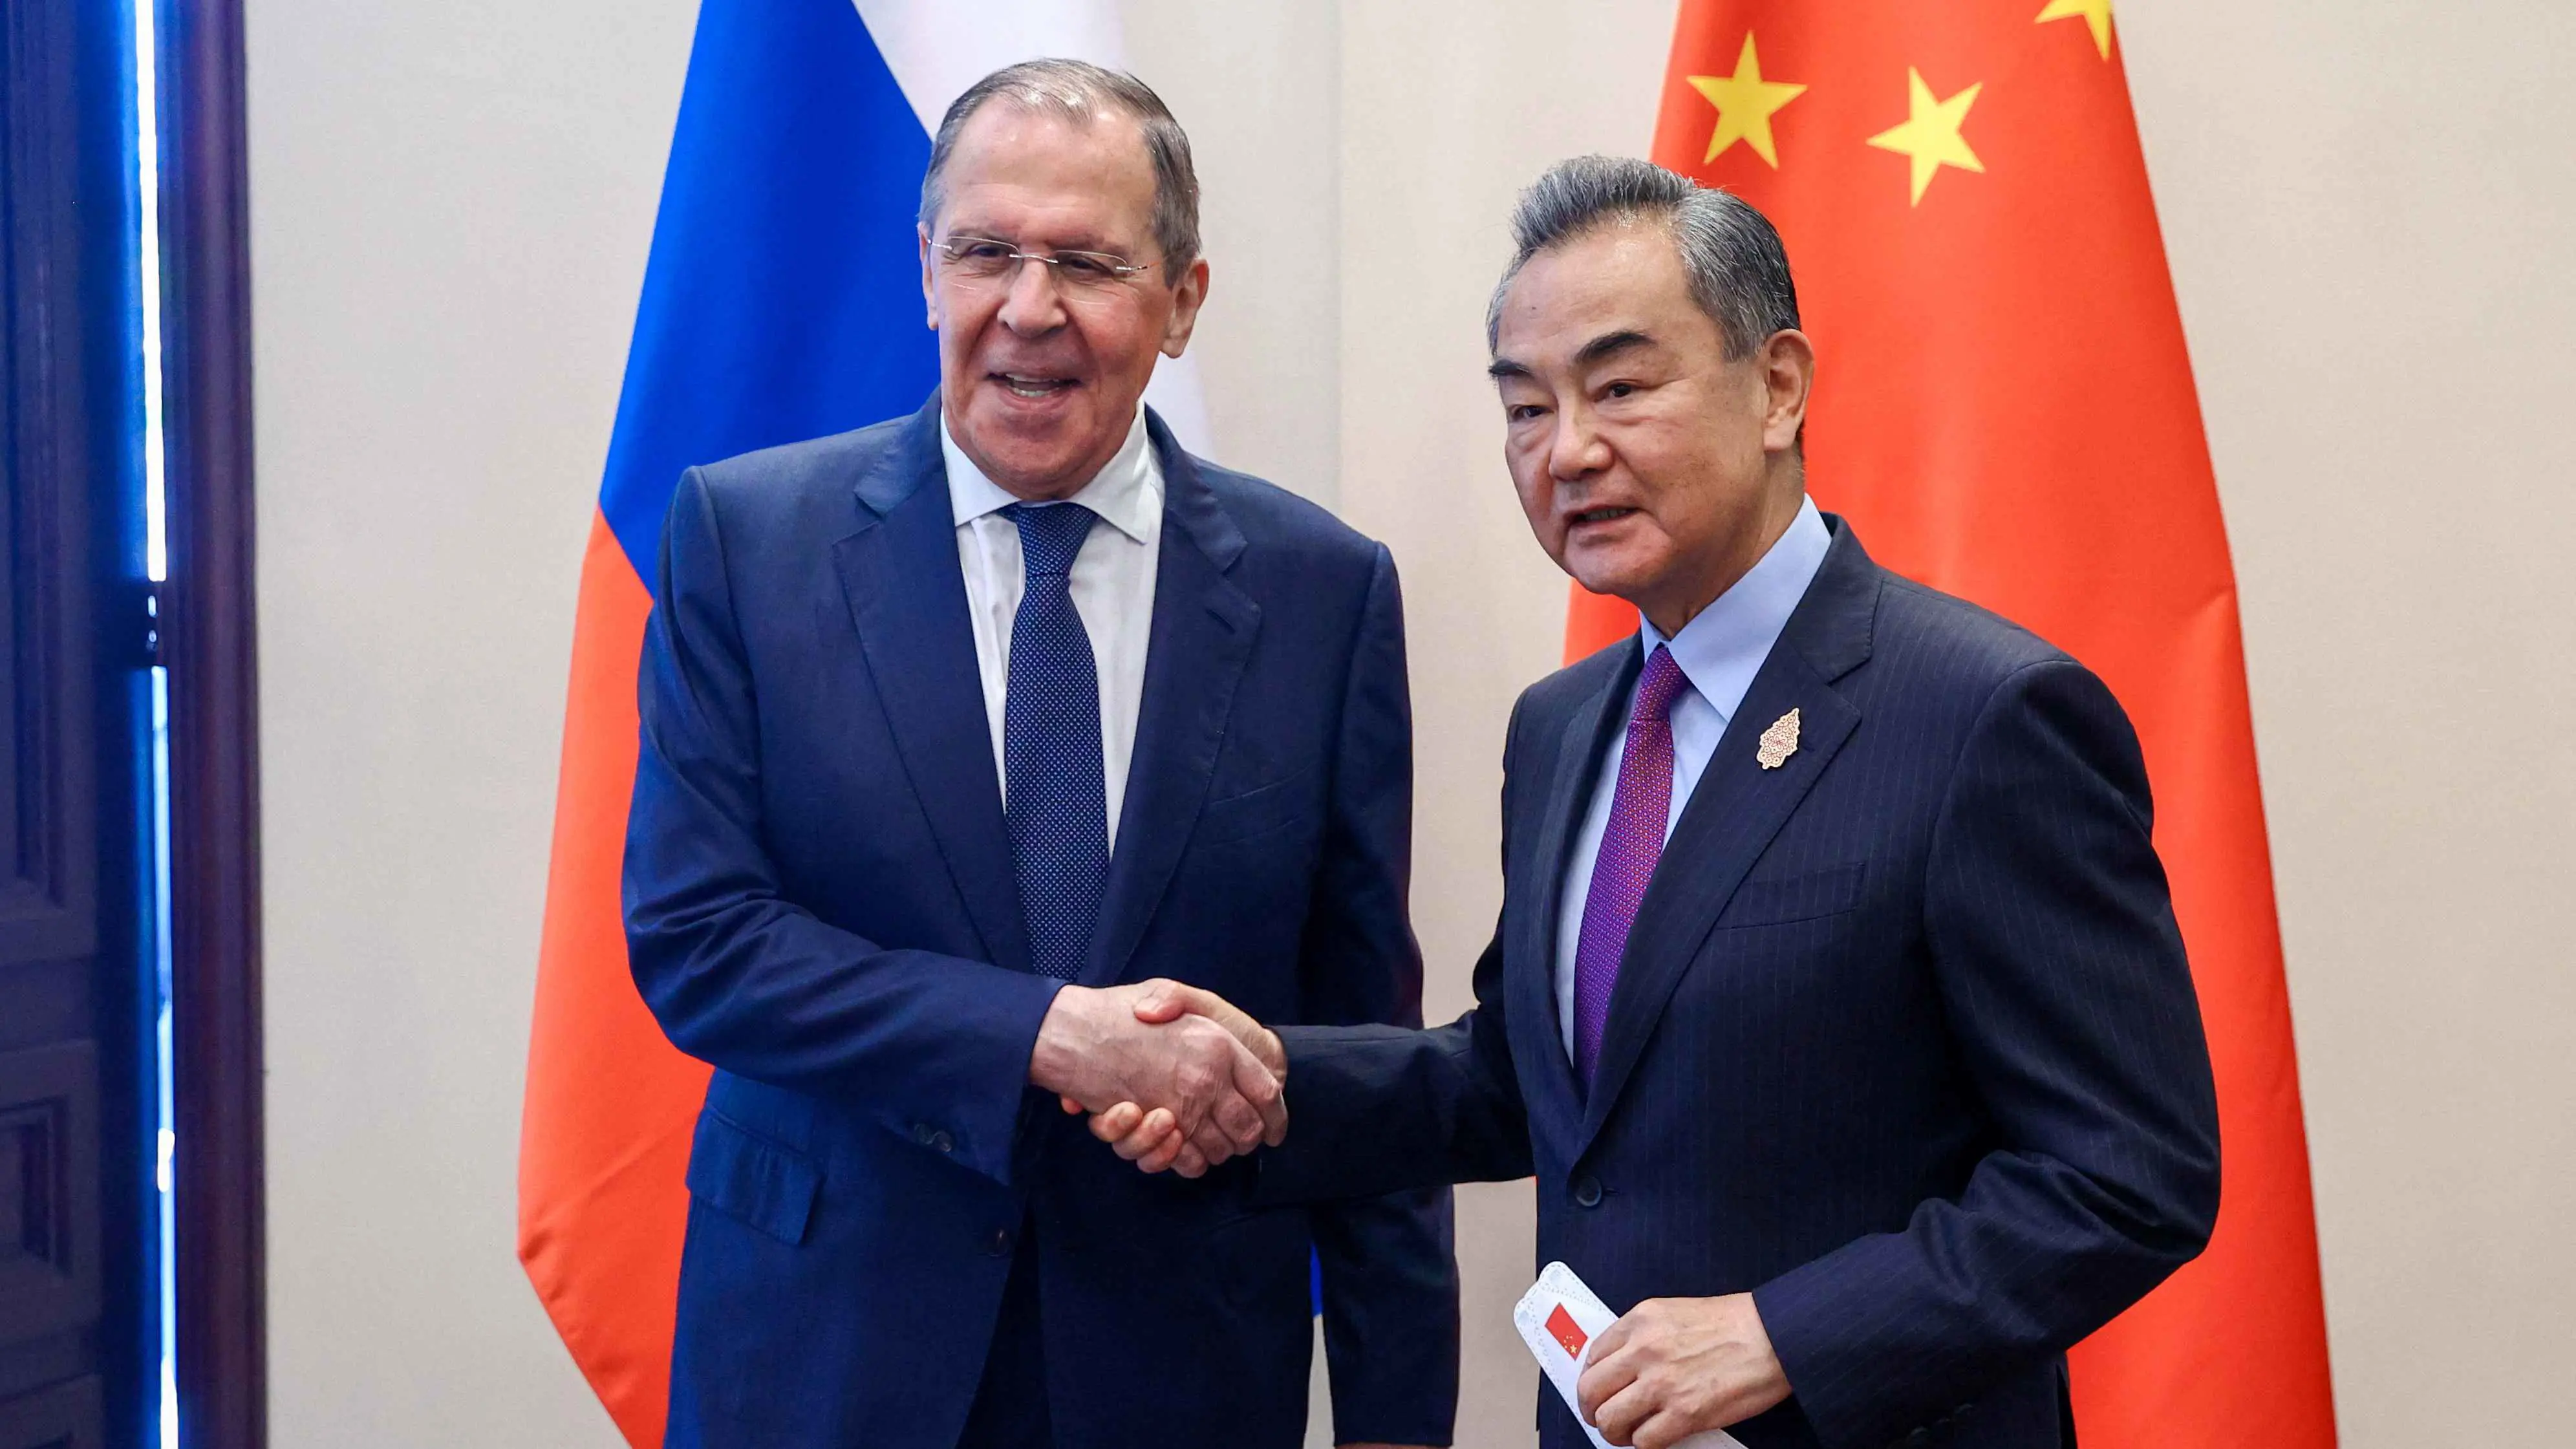 الصين وروسيا تناقشان إنشاء "بنية أمنية جديدة" في أوراسيا